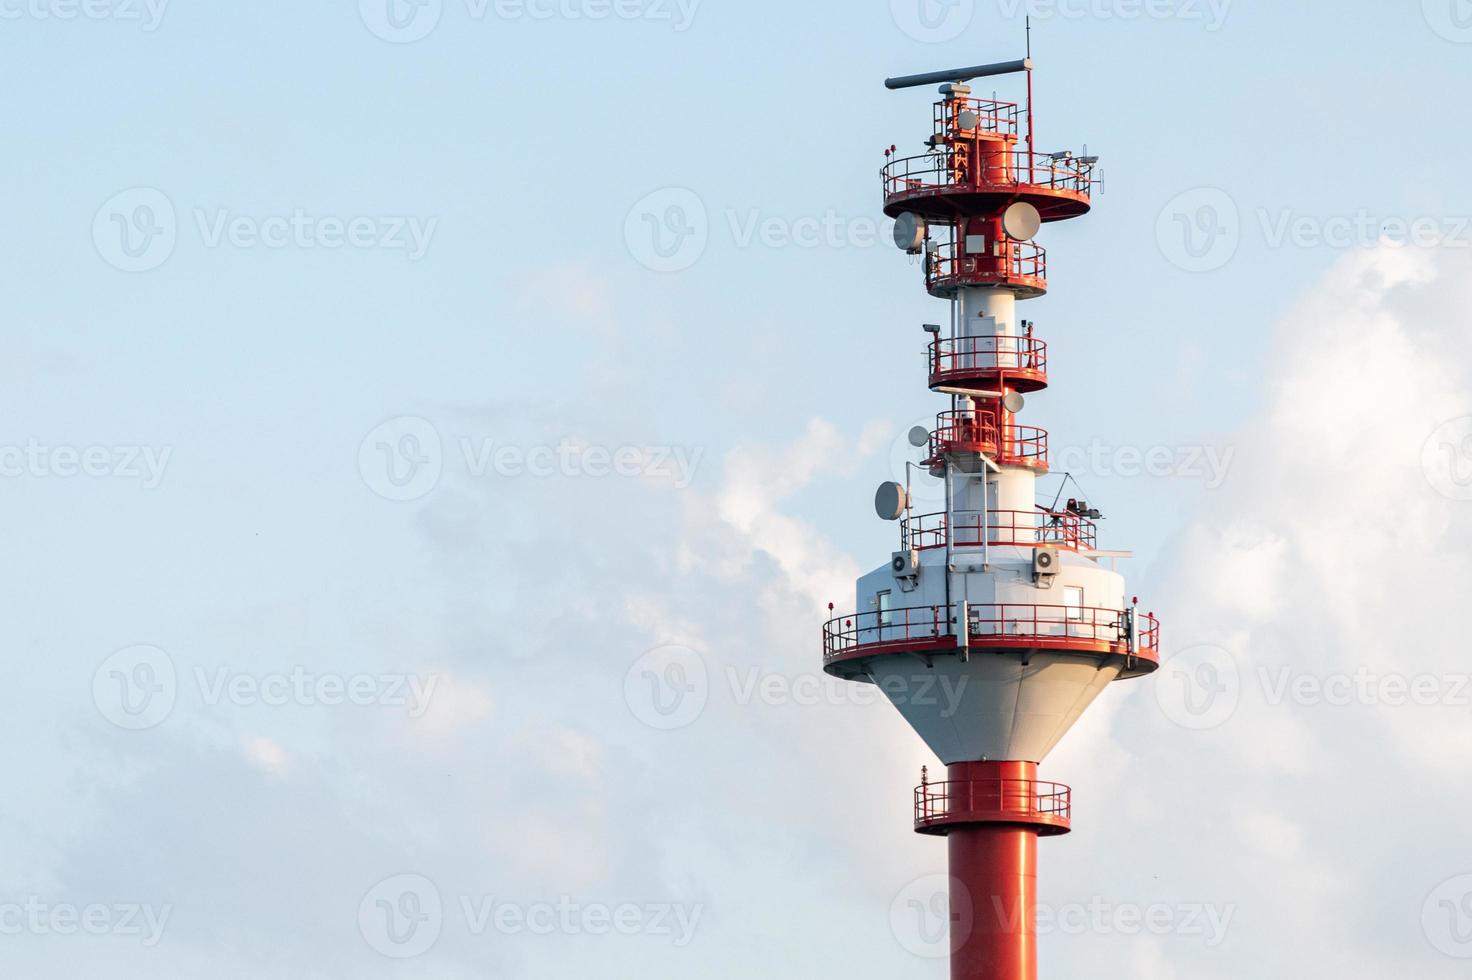 torre di controllo del traffico navale, spazio di copia. torre di monitoraggio meteo e mare. torre di sorveglianza costiera della nave foto